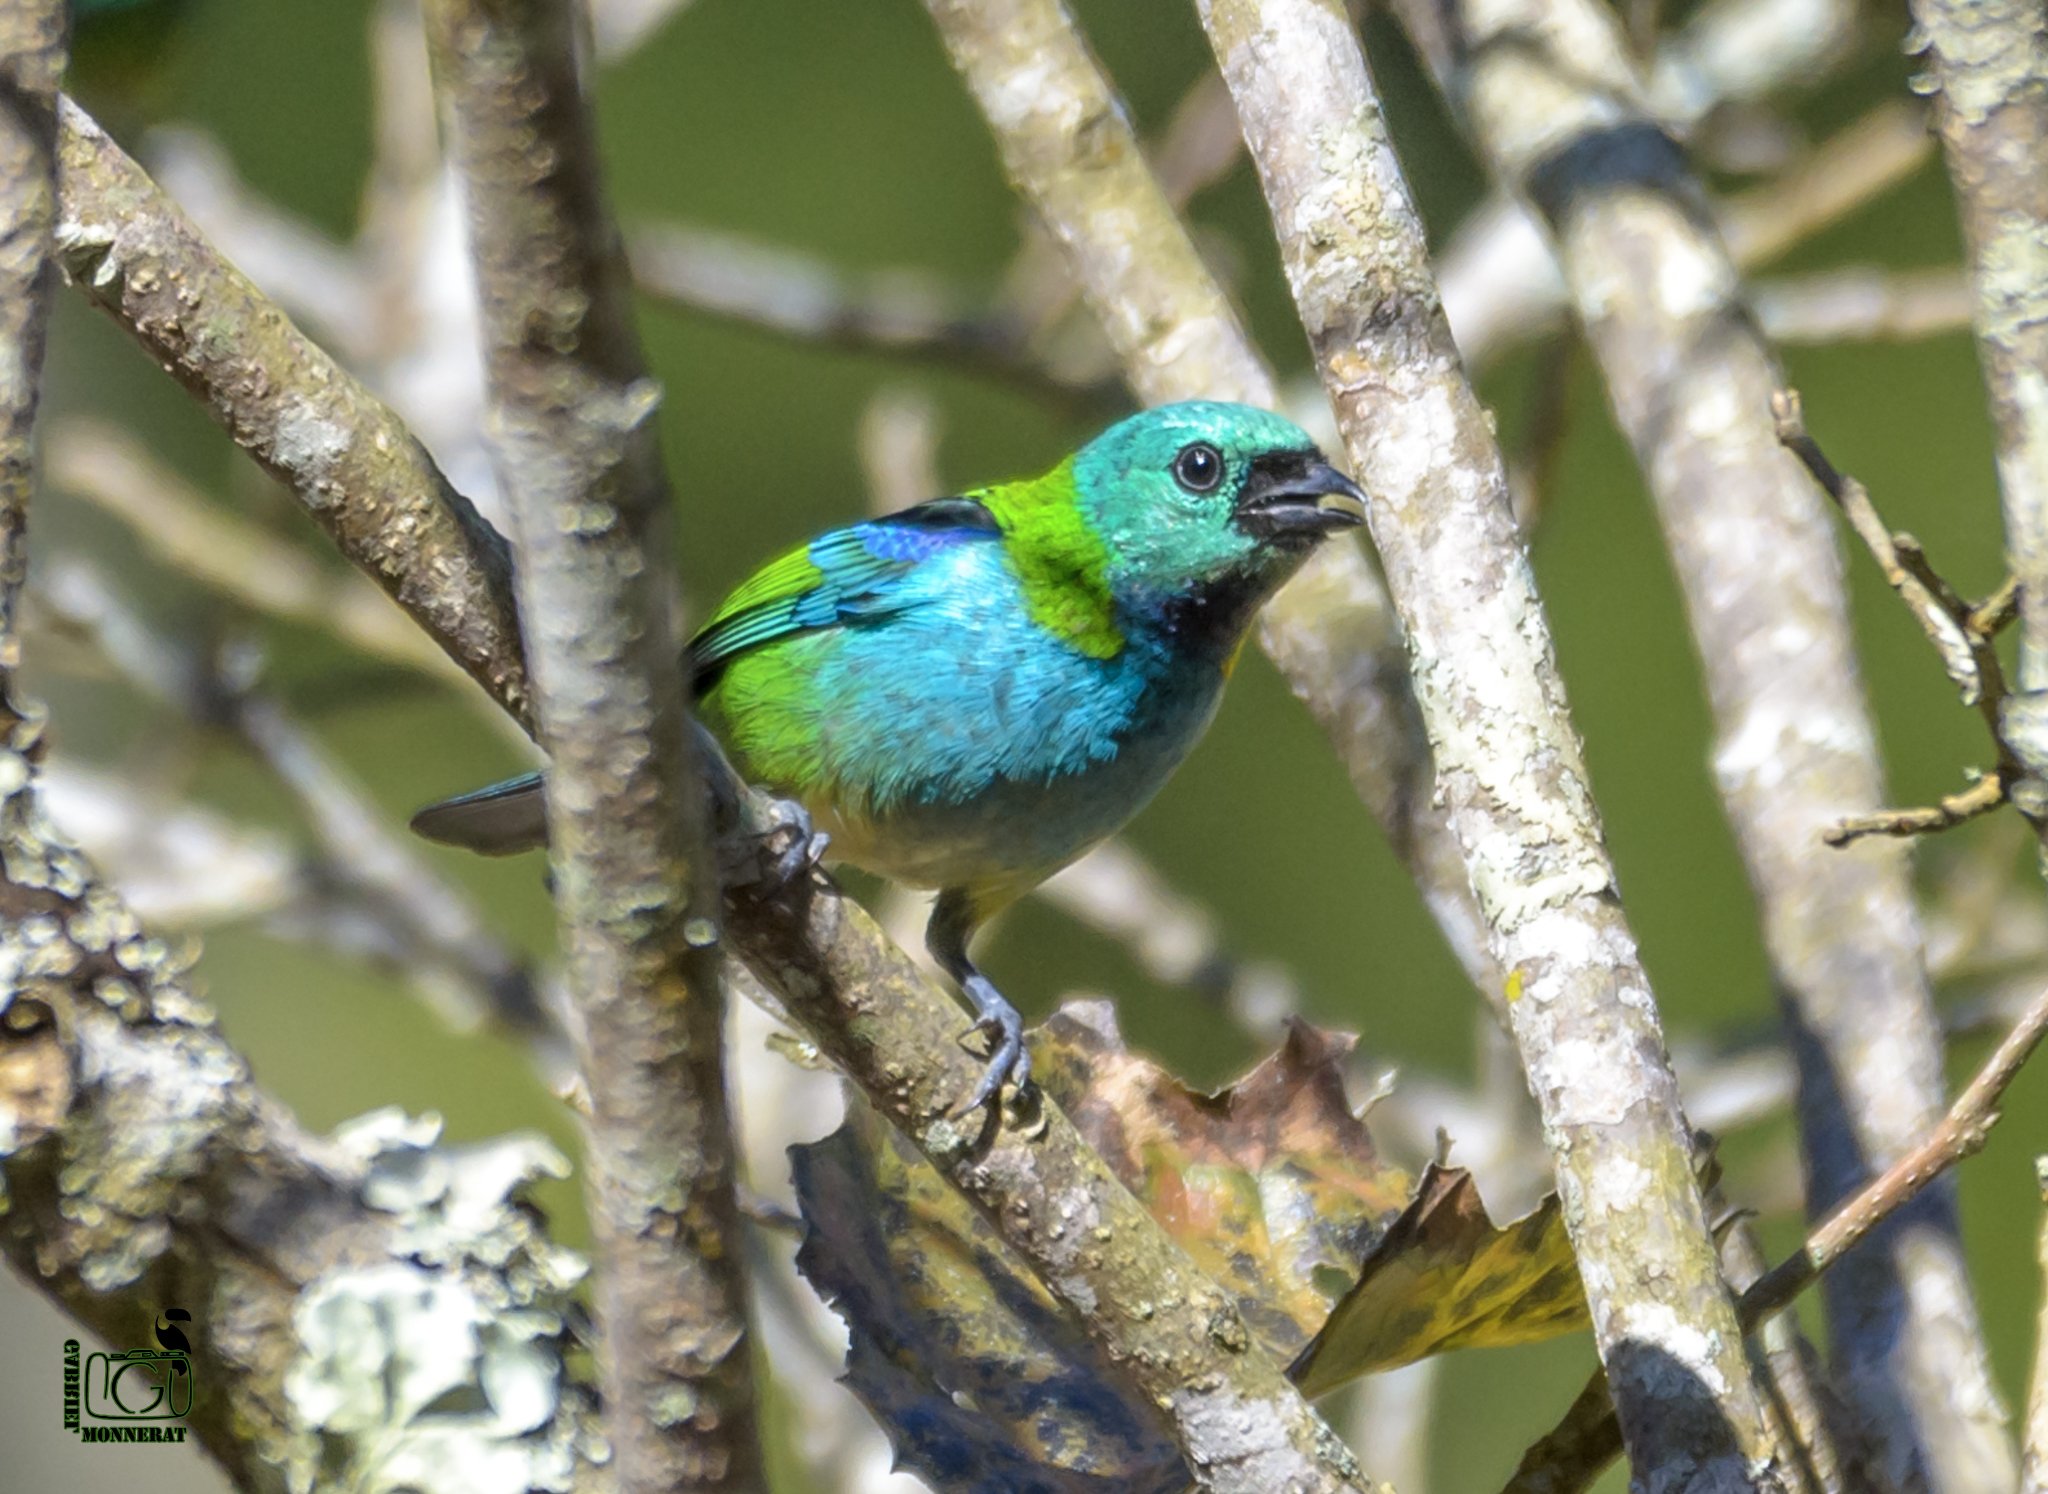 Saíra-sete-cores: ave multicolorida comum no interior do Rio de Janeiro